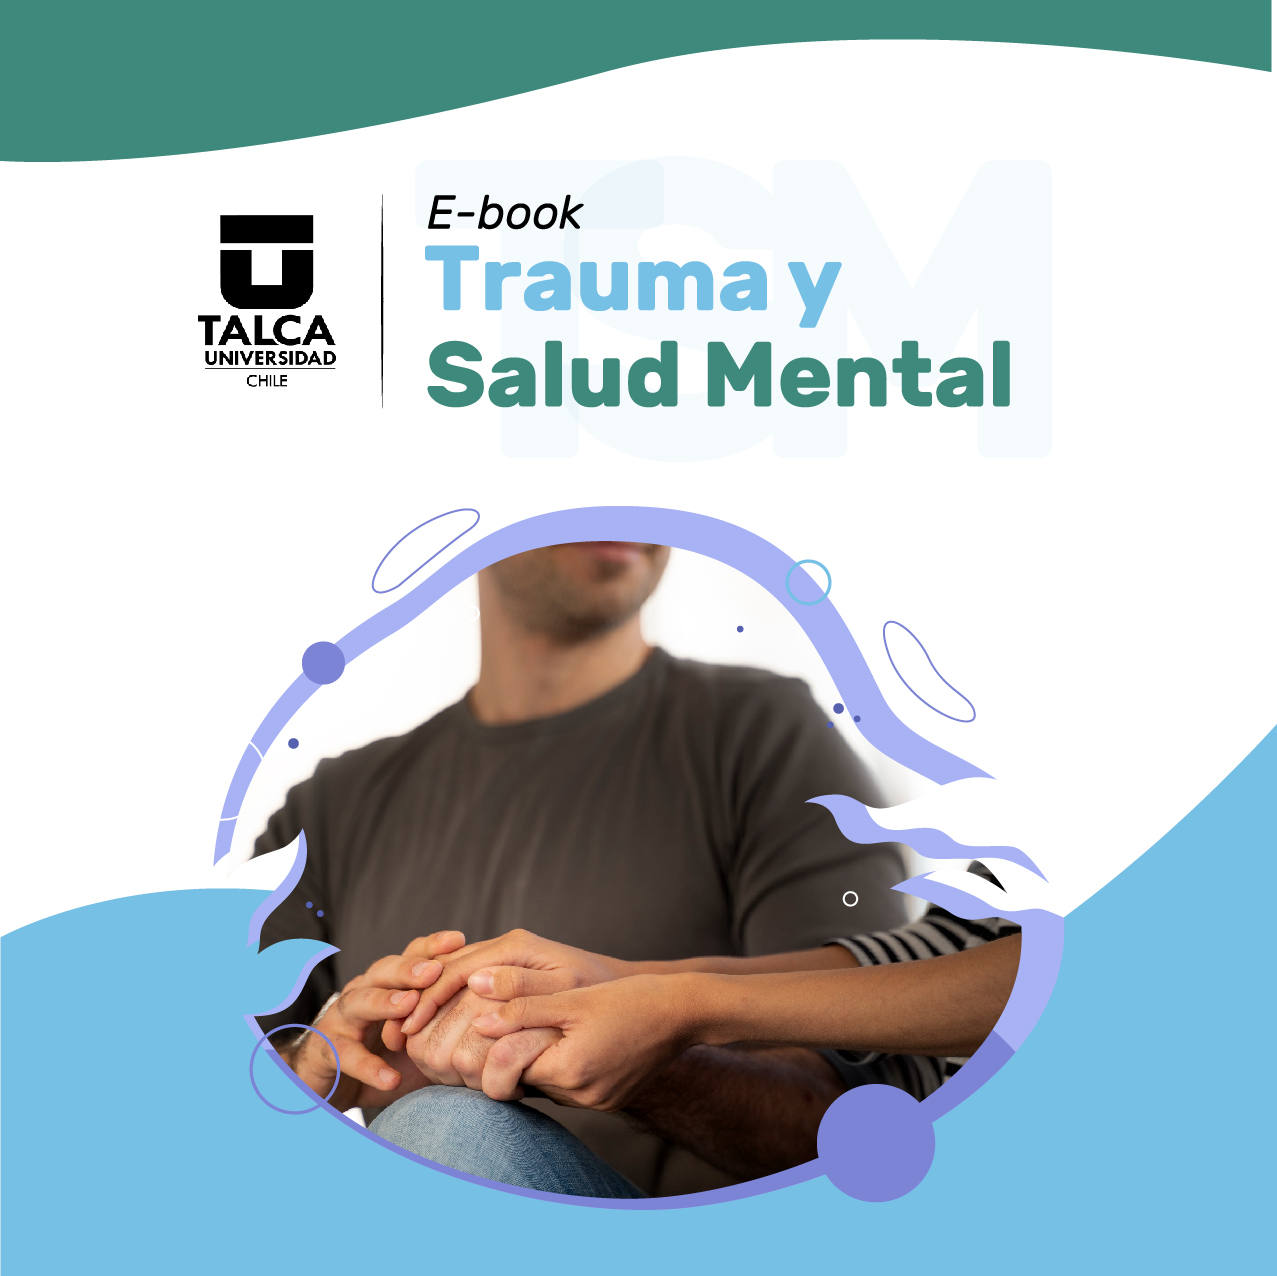 E-book Trauma y Salud Mental, Psicología Utalca